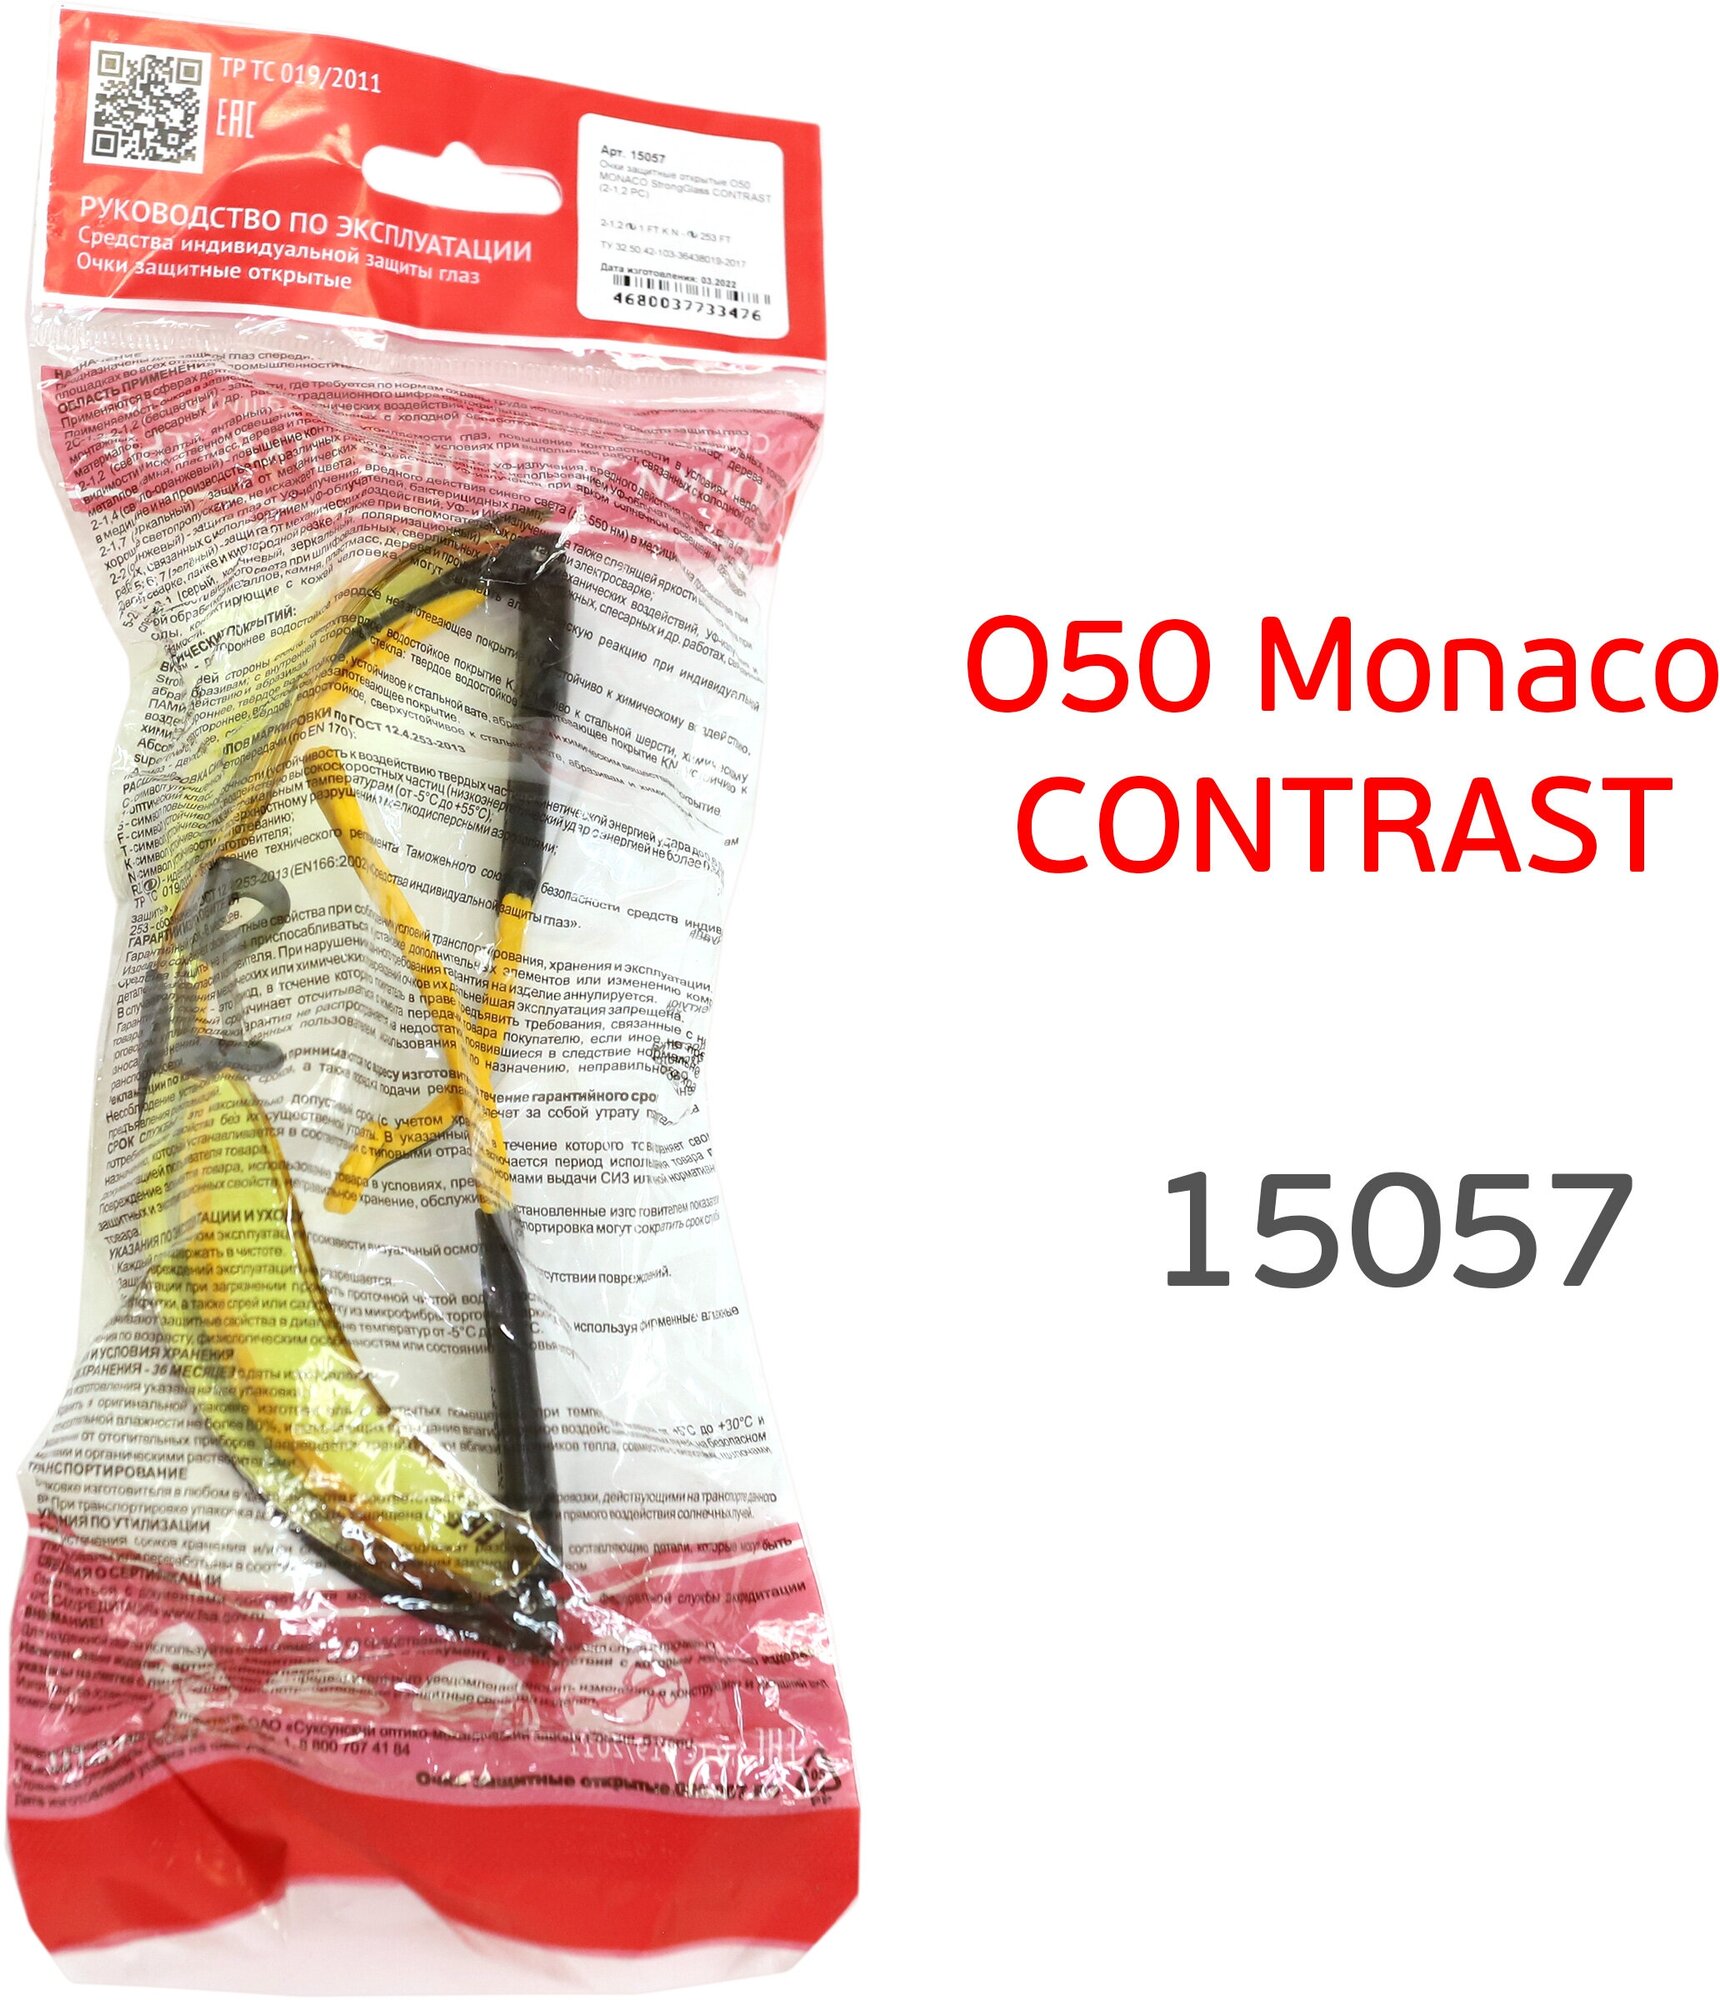 Очки РОСОМЗ O50 Monaco CONTRAST 15057 желтые защитные открытые - фотография № 10